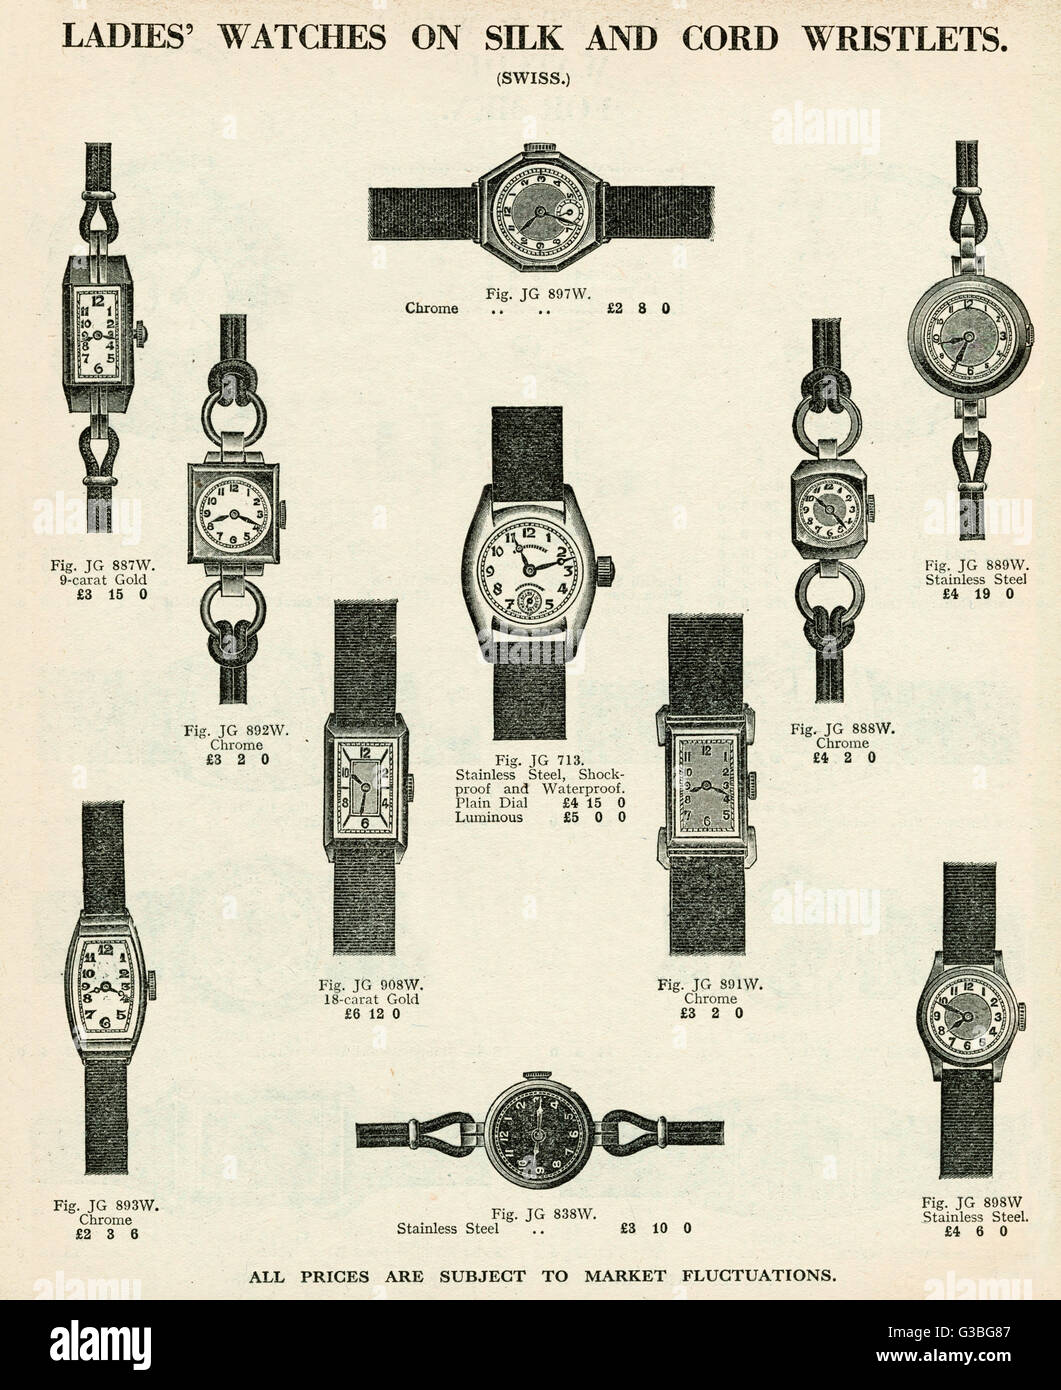 Relojes de pulsera para damas con correas de seda y cordón 1937 Foto de stock